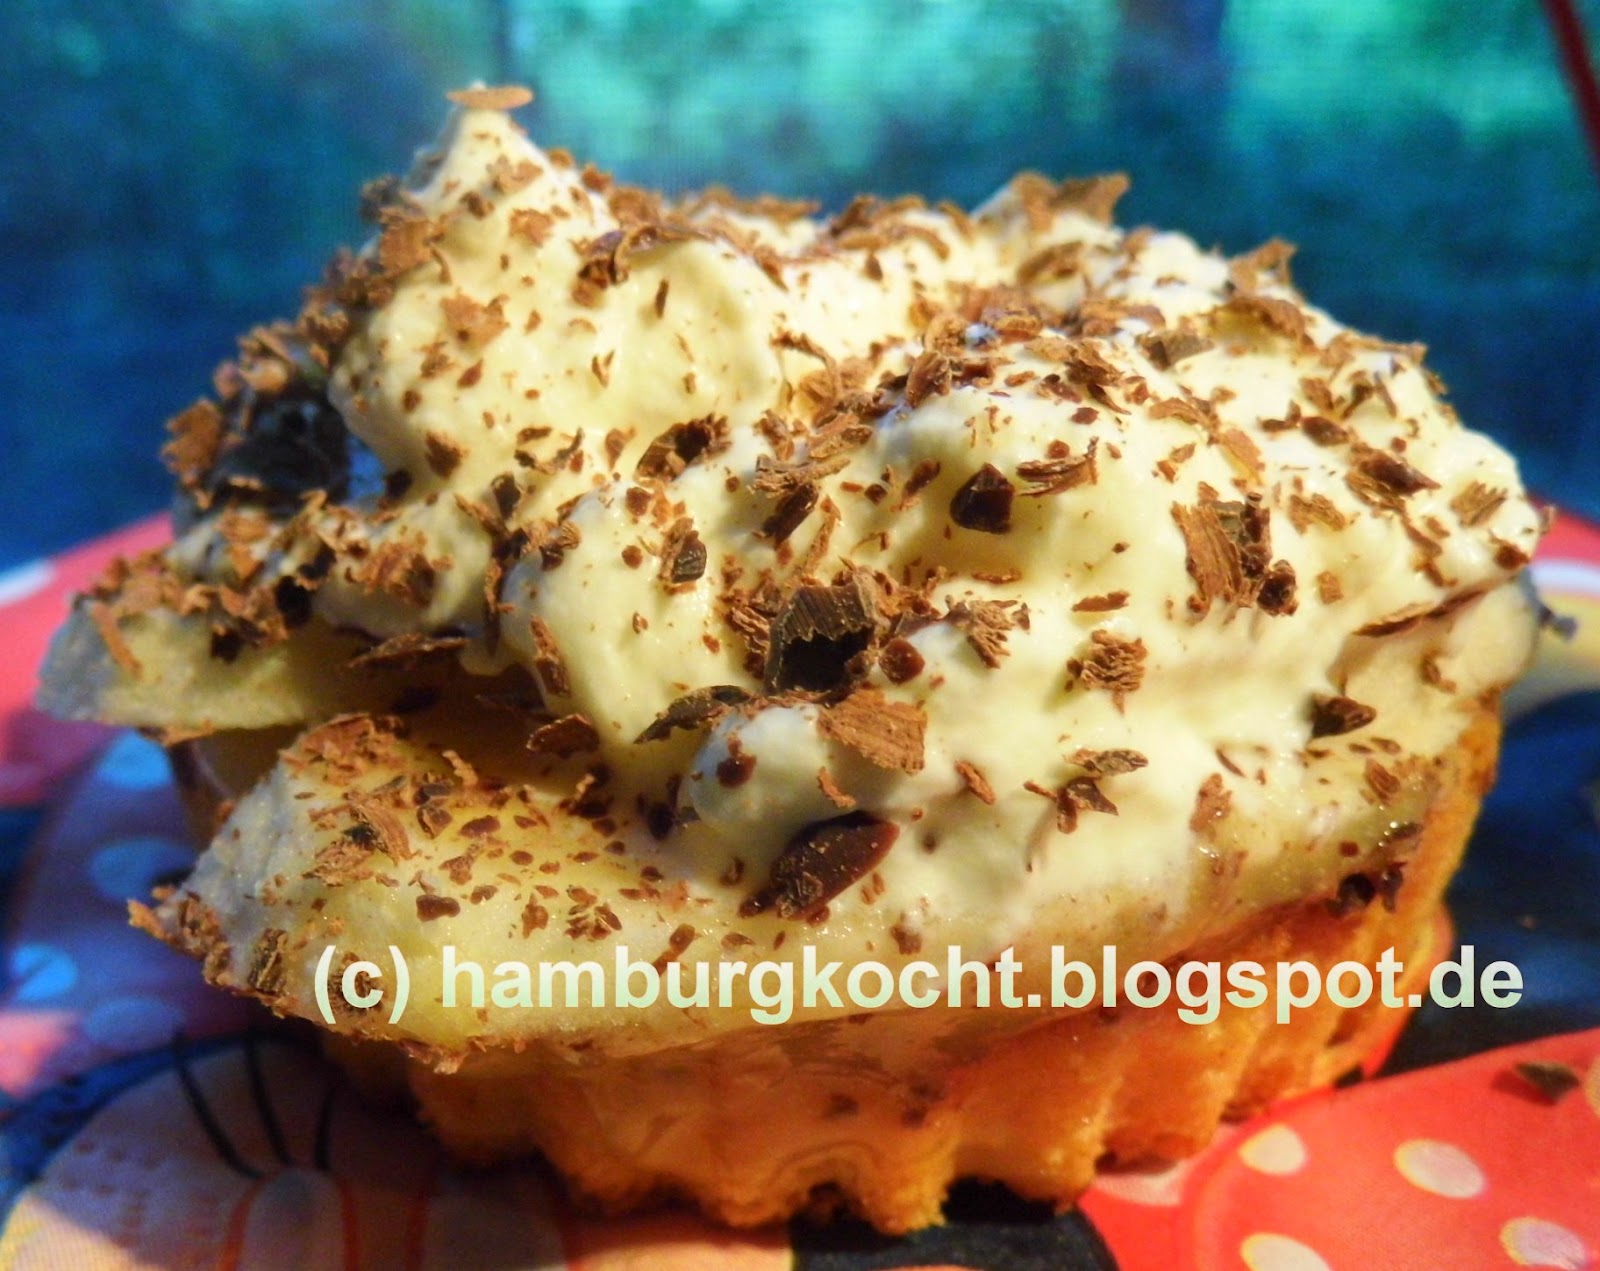 Hamburg kocht!: Schnelle Bananen-Toffee-Törtchen nach Jamie Oliver